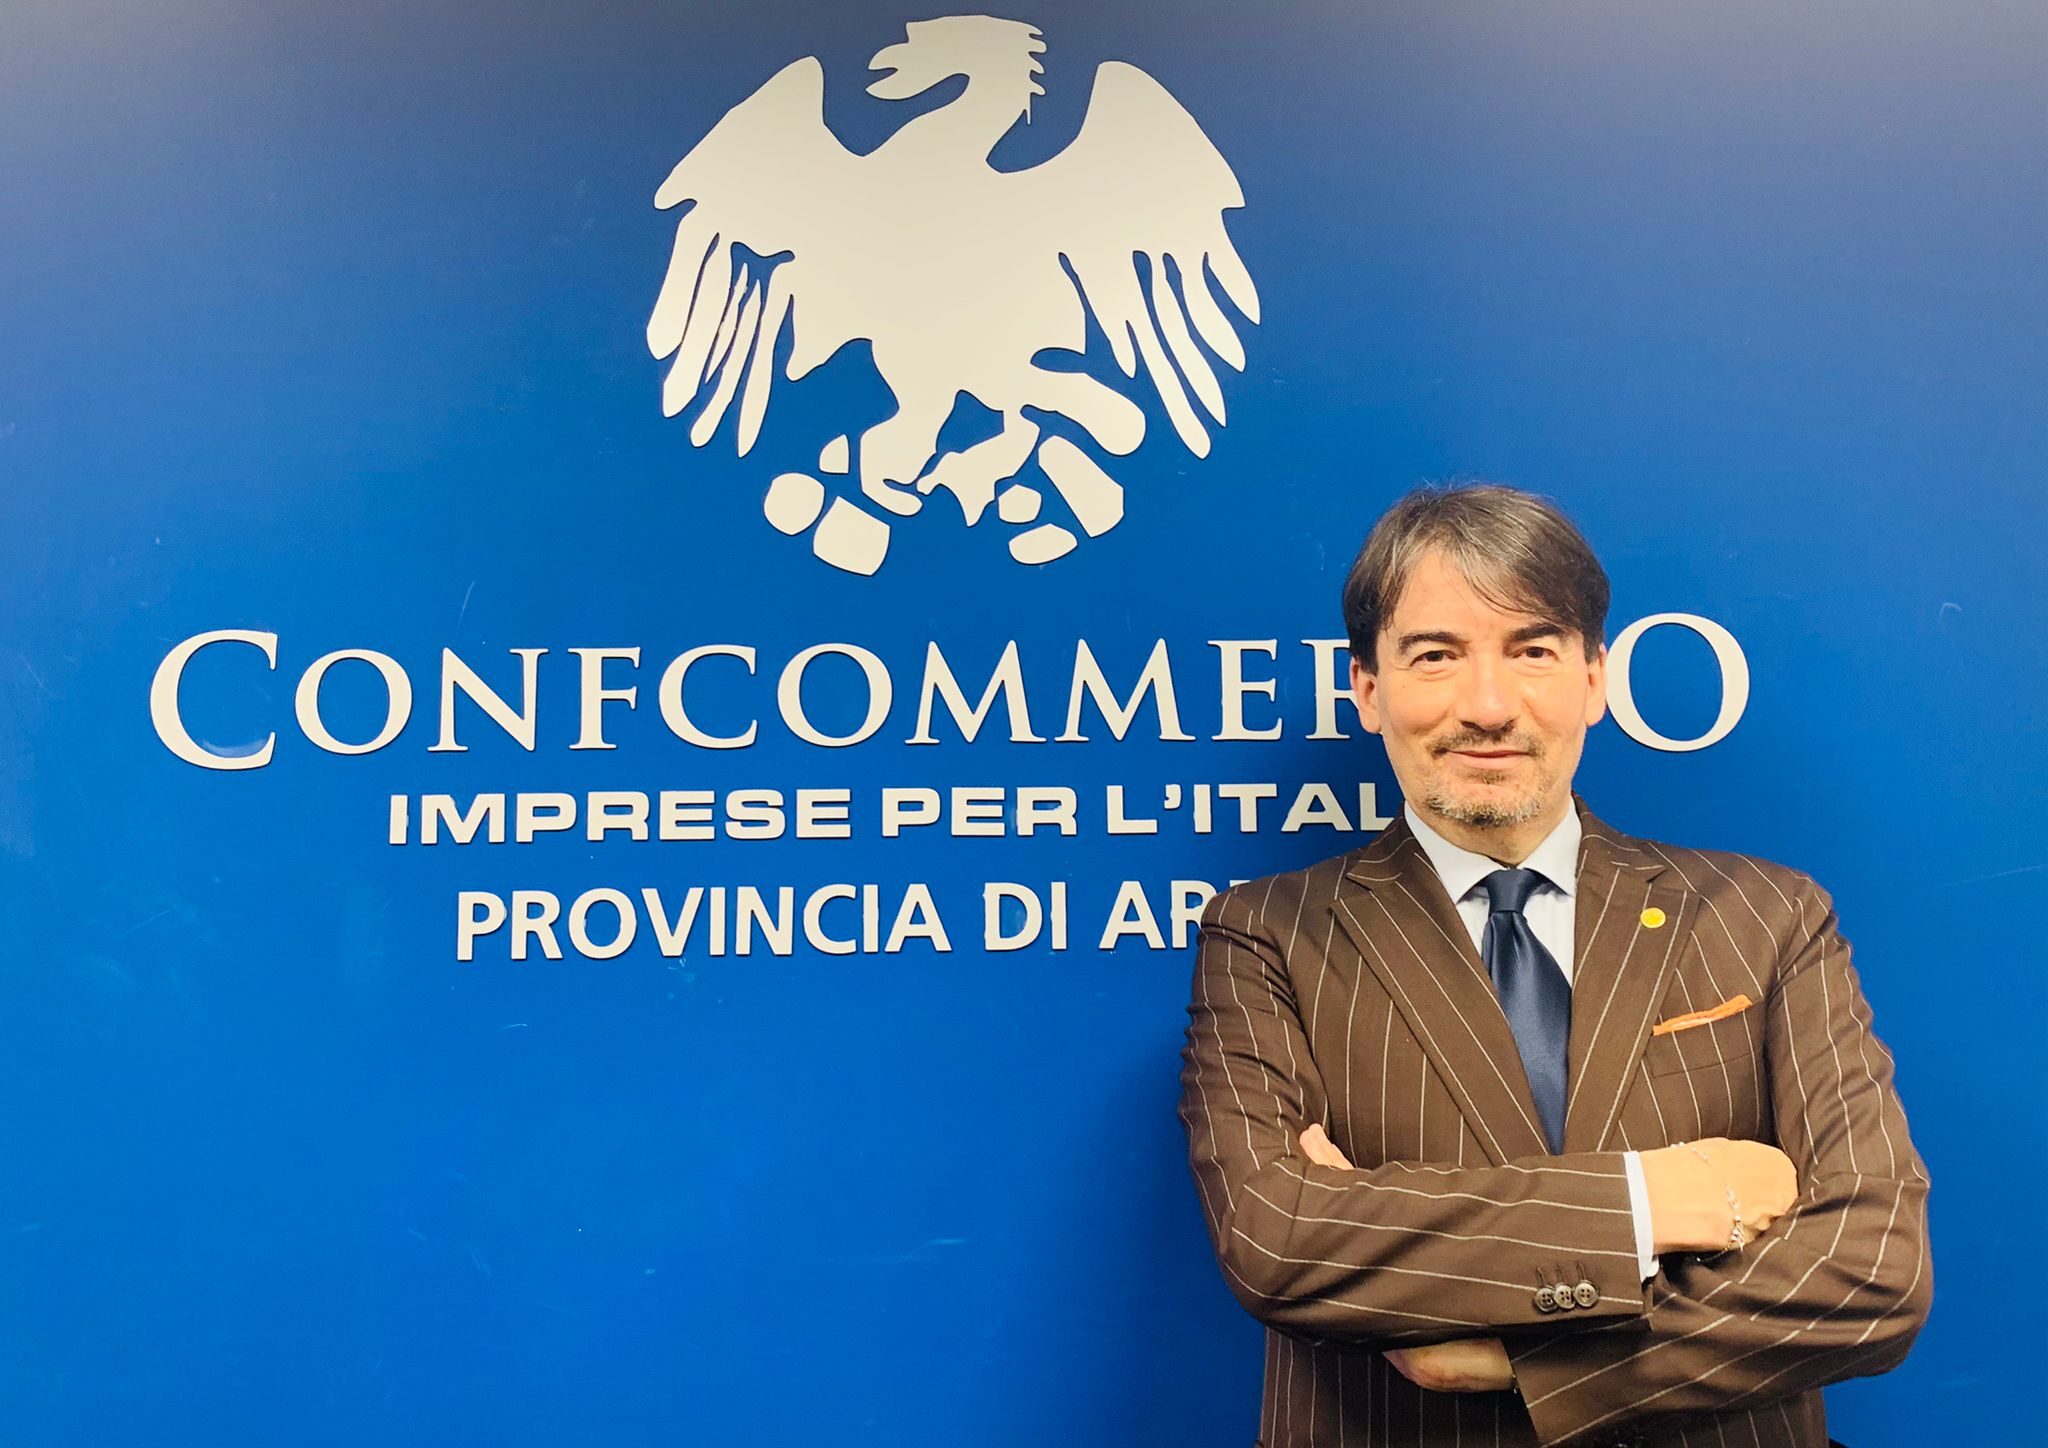 Carlo Barbagli confermato Presidente degli agenti immobiliari di Confcommercio Arezzo